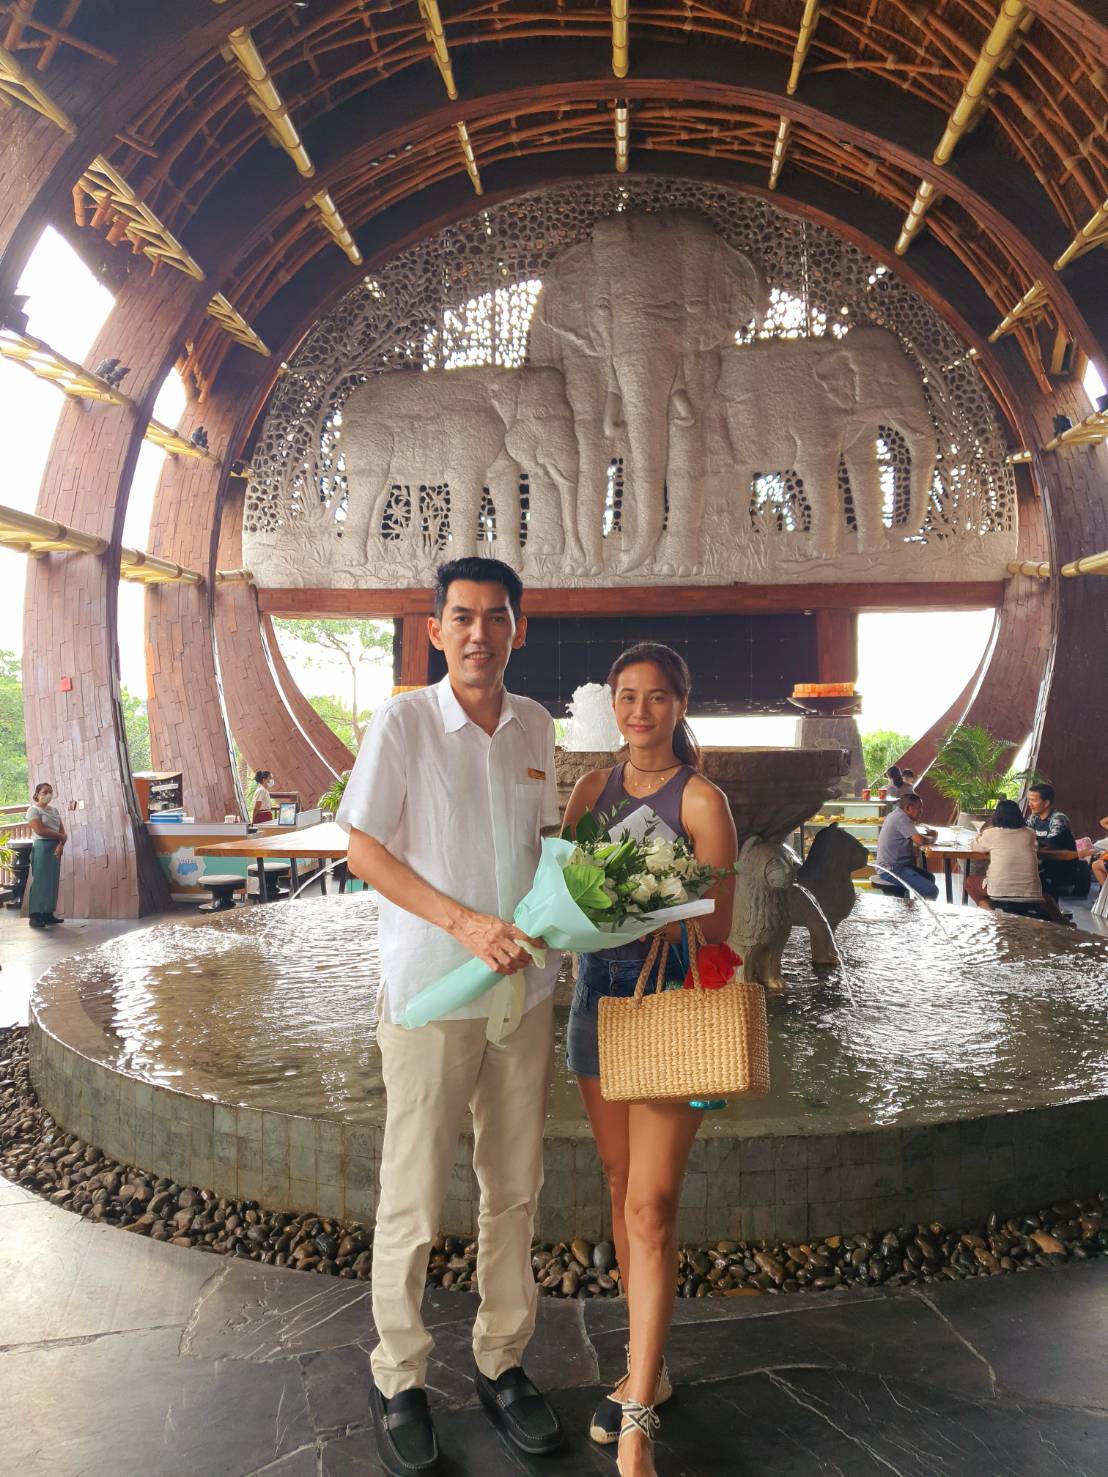 Centara Grand Mirage Beach Resort Pattaya welcomes Namfon Kullanut